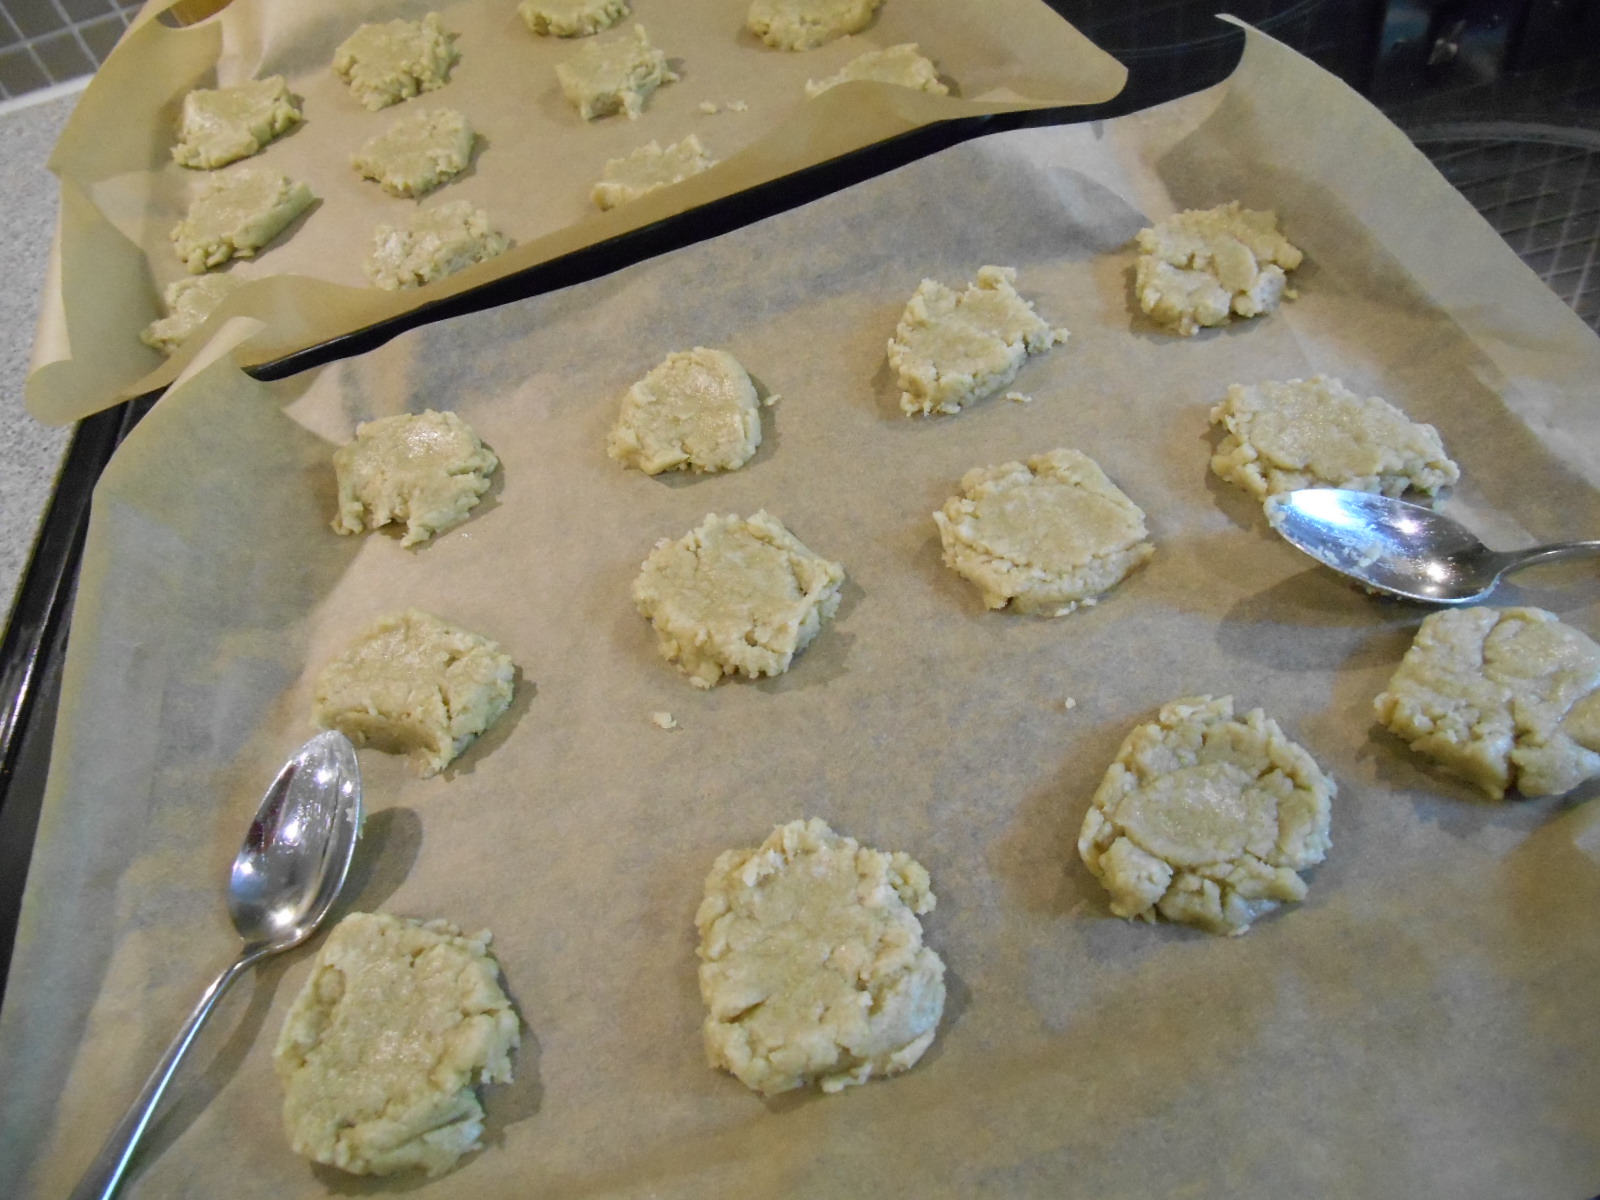 buckwheat cookies